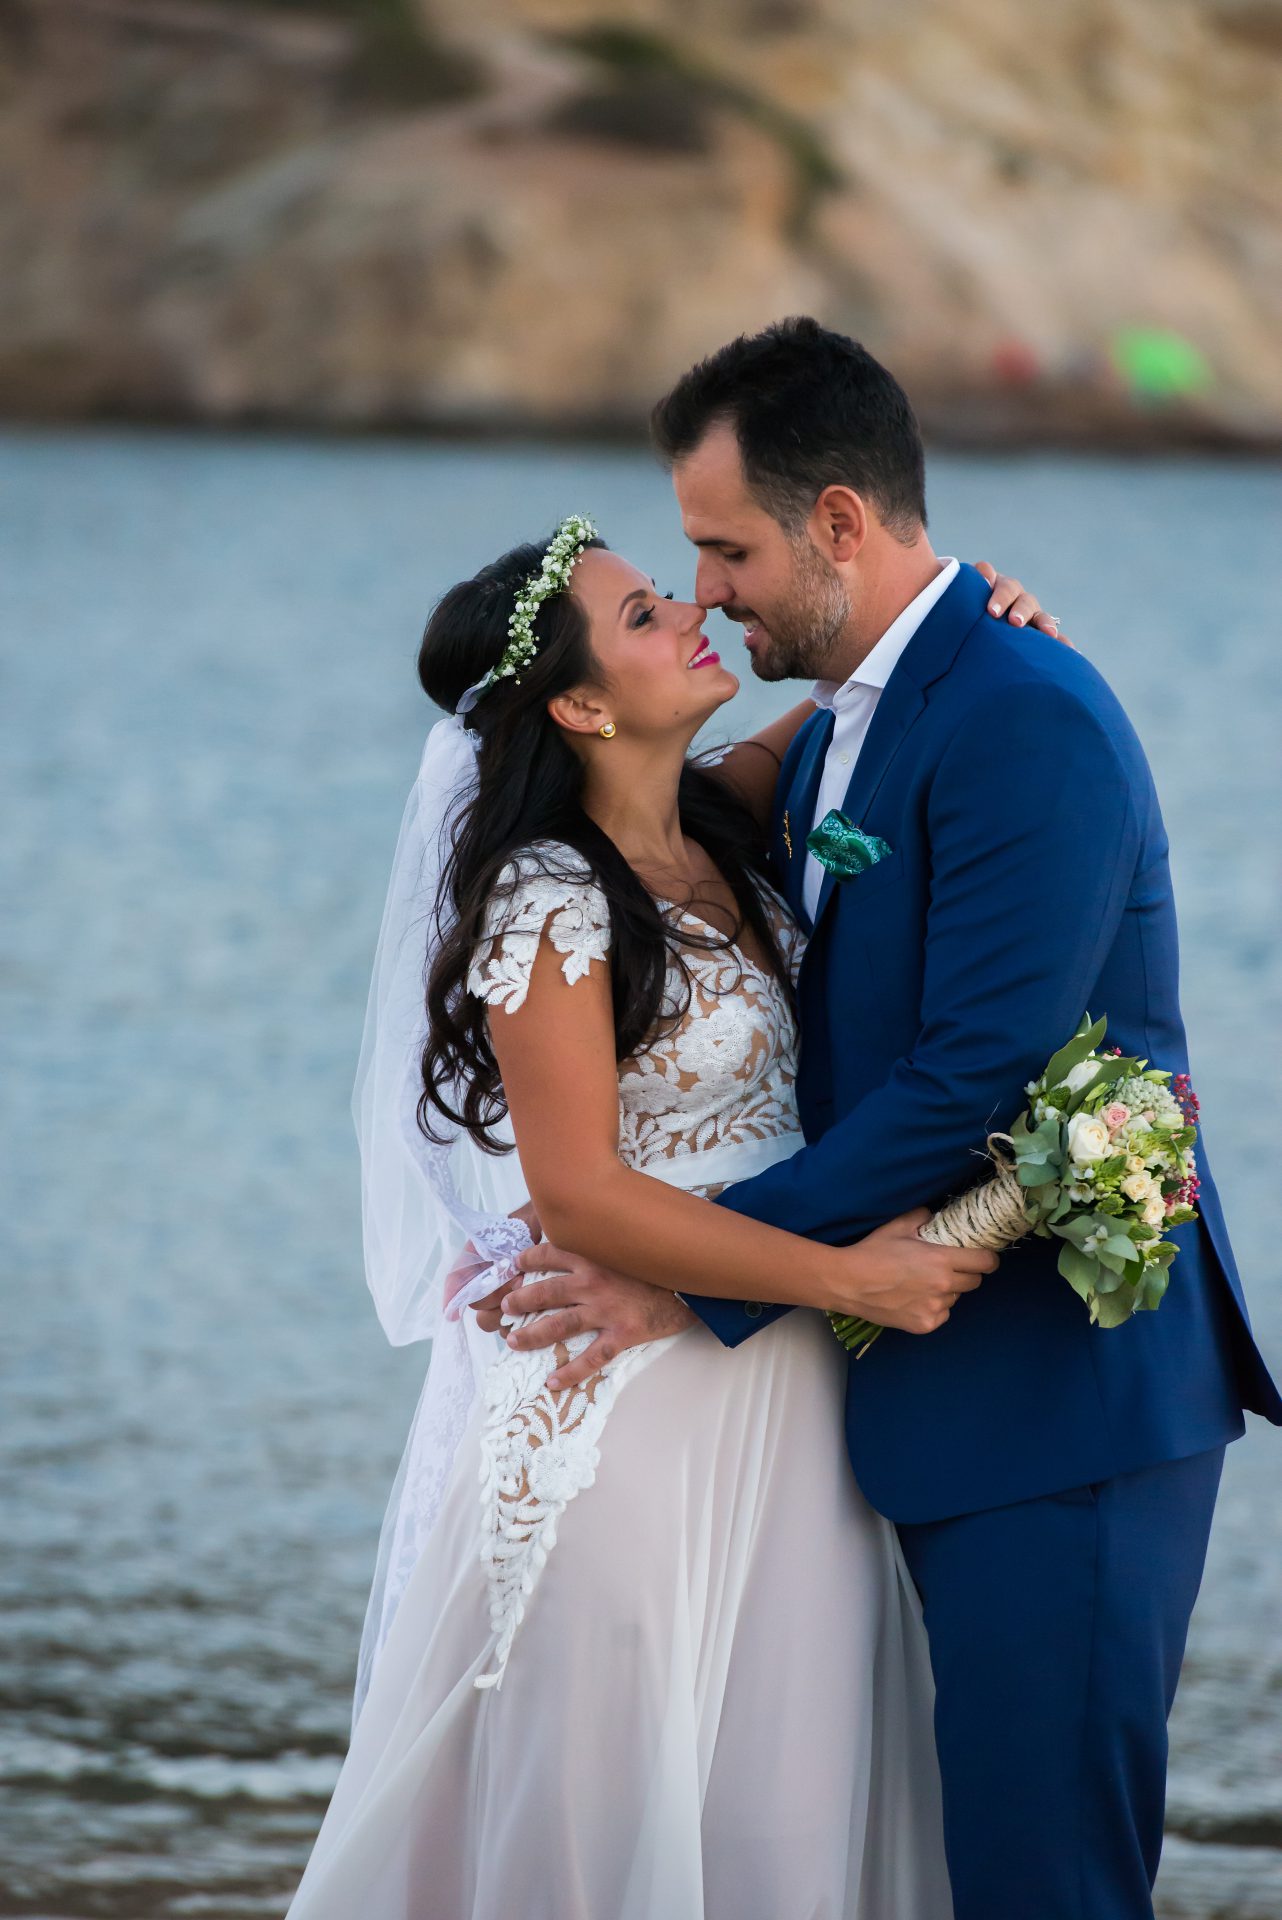 Άγιος Νικόλαος Ανάβυσσος φωτογράφηση γάμου Next day